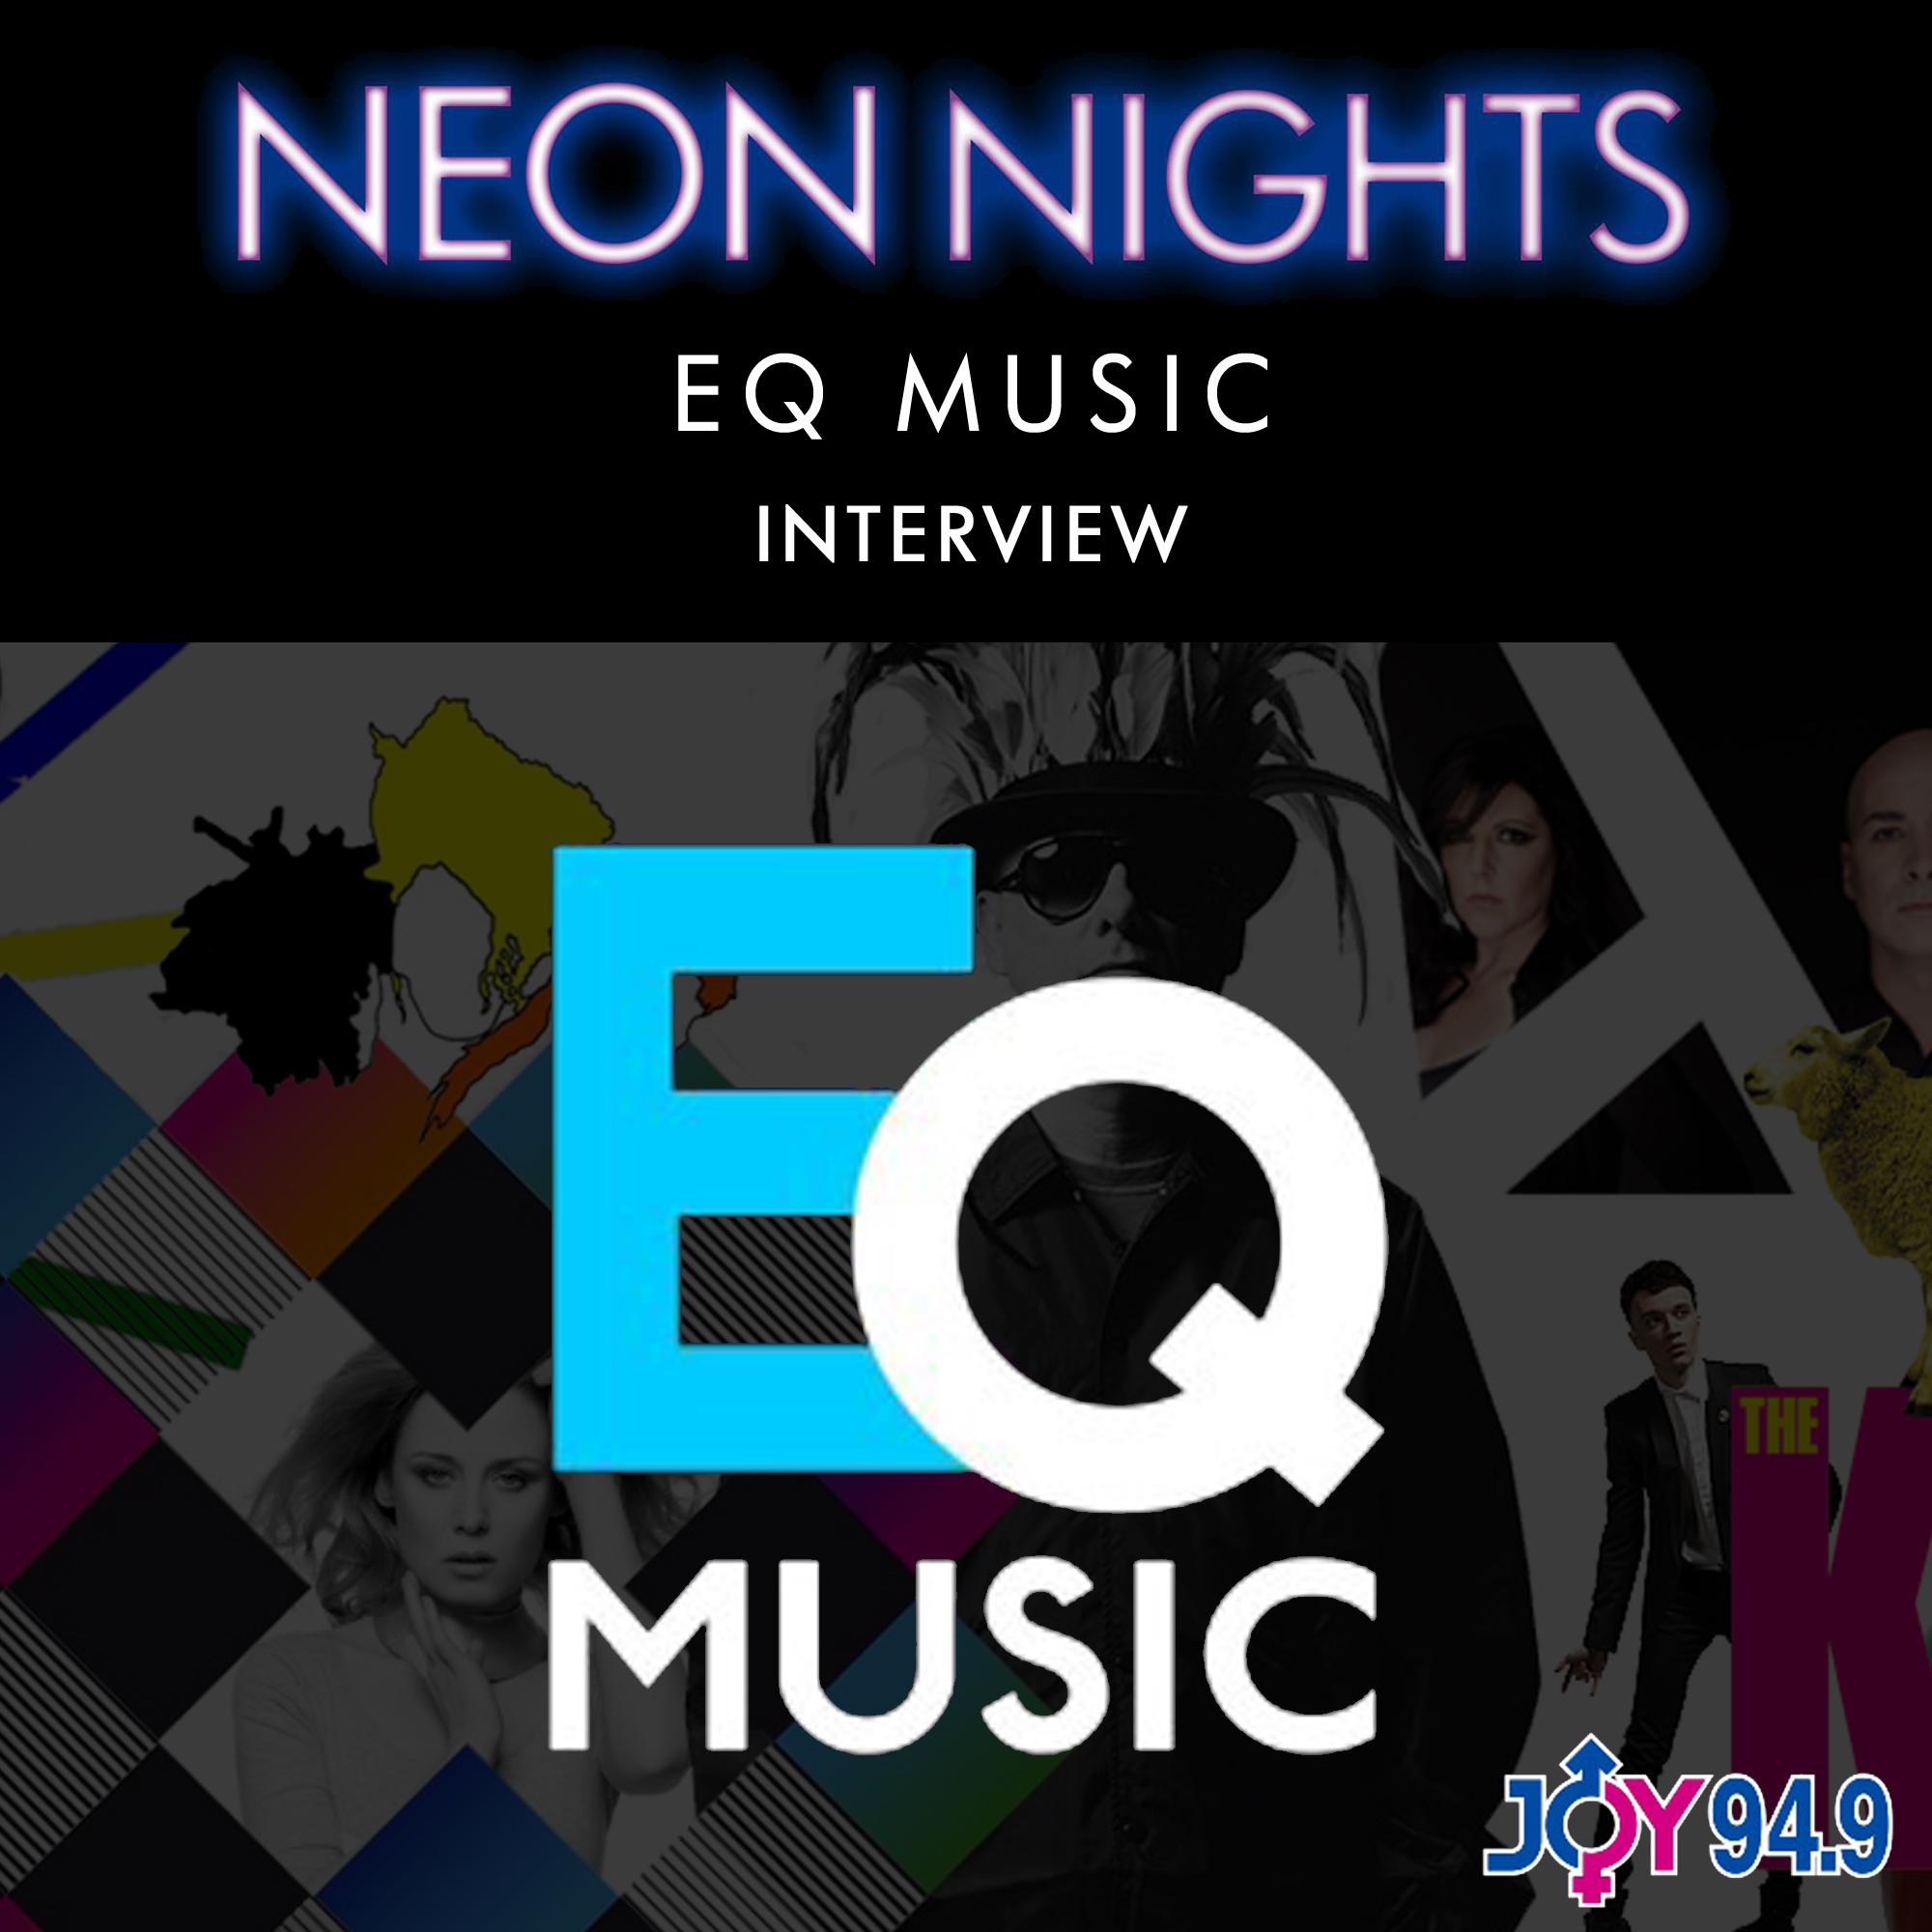 Show 001 / EQ Music Interview interviewed by John von Ahlen